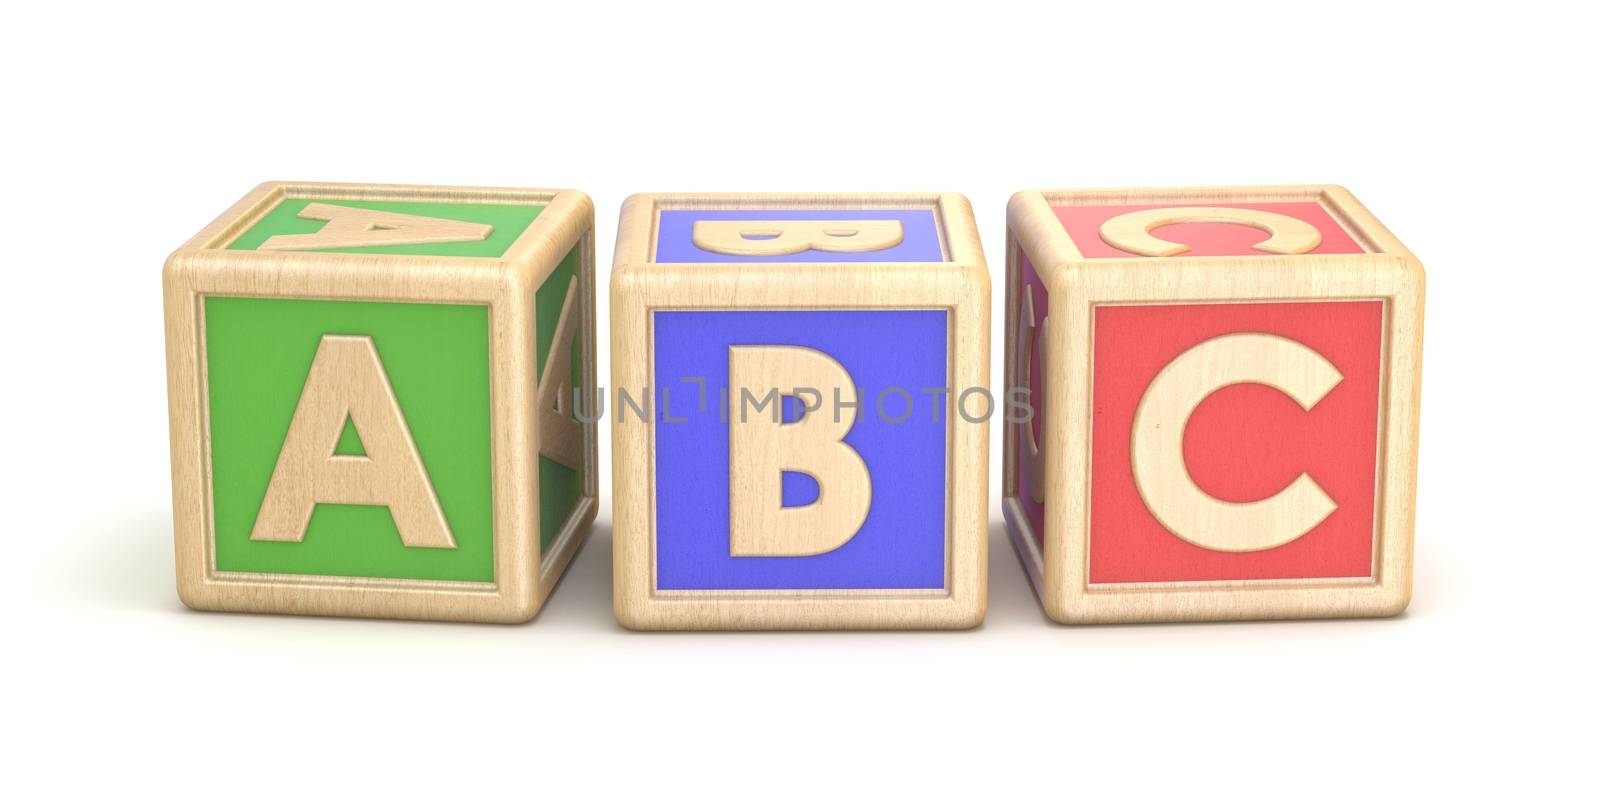 Letter blocks ABC. 3D render illustration isolated on white background